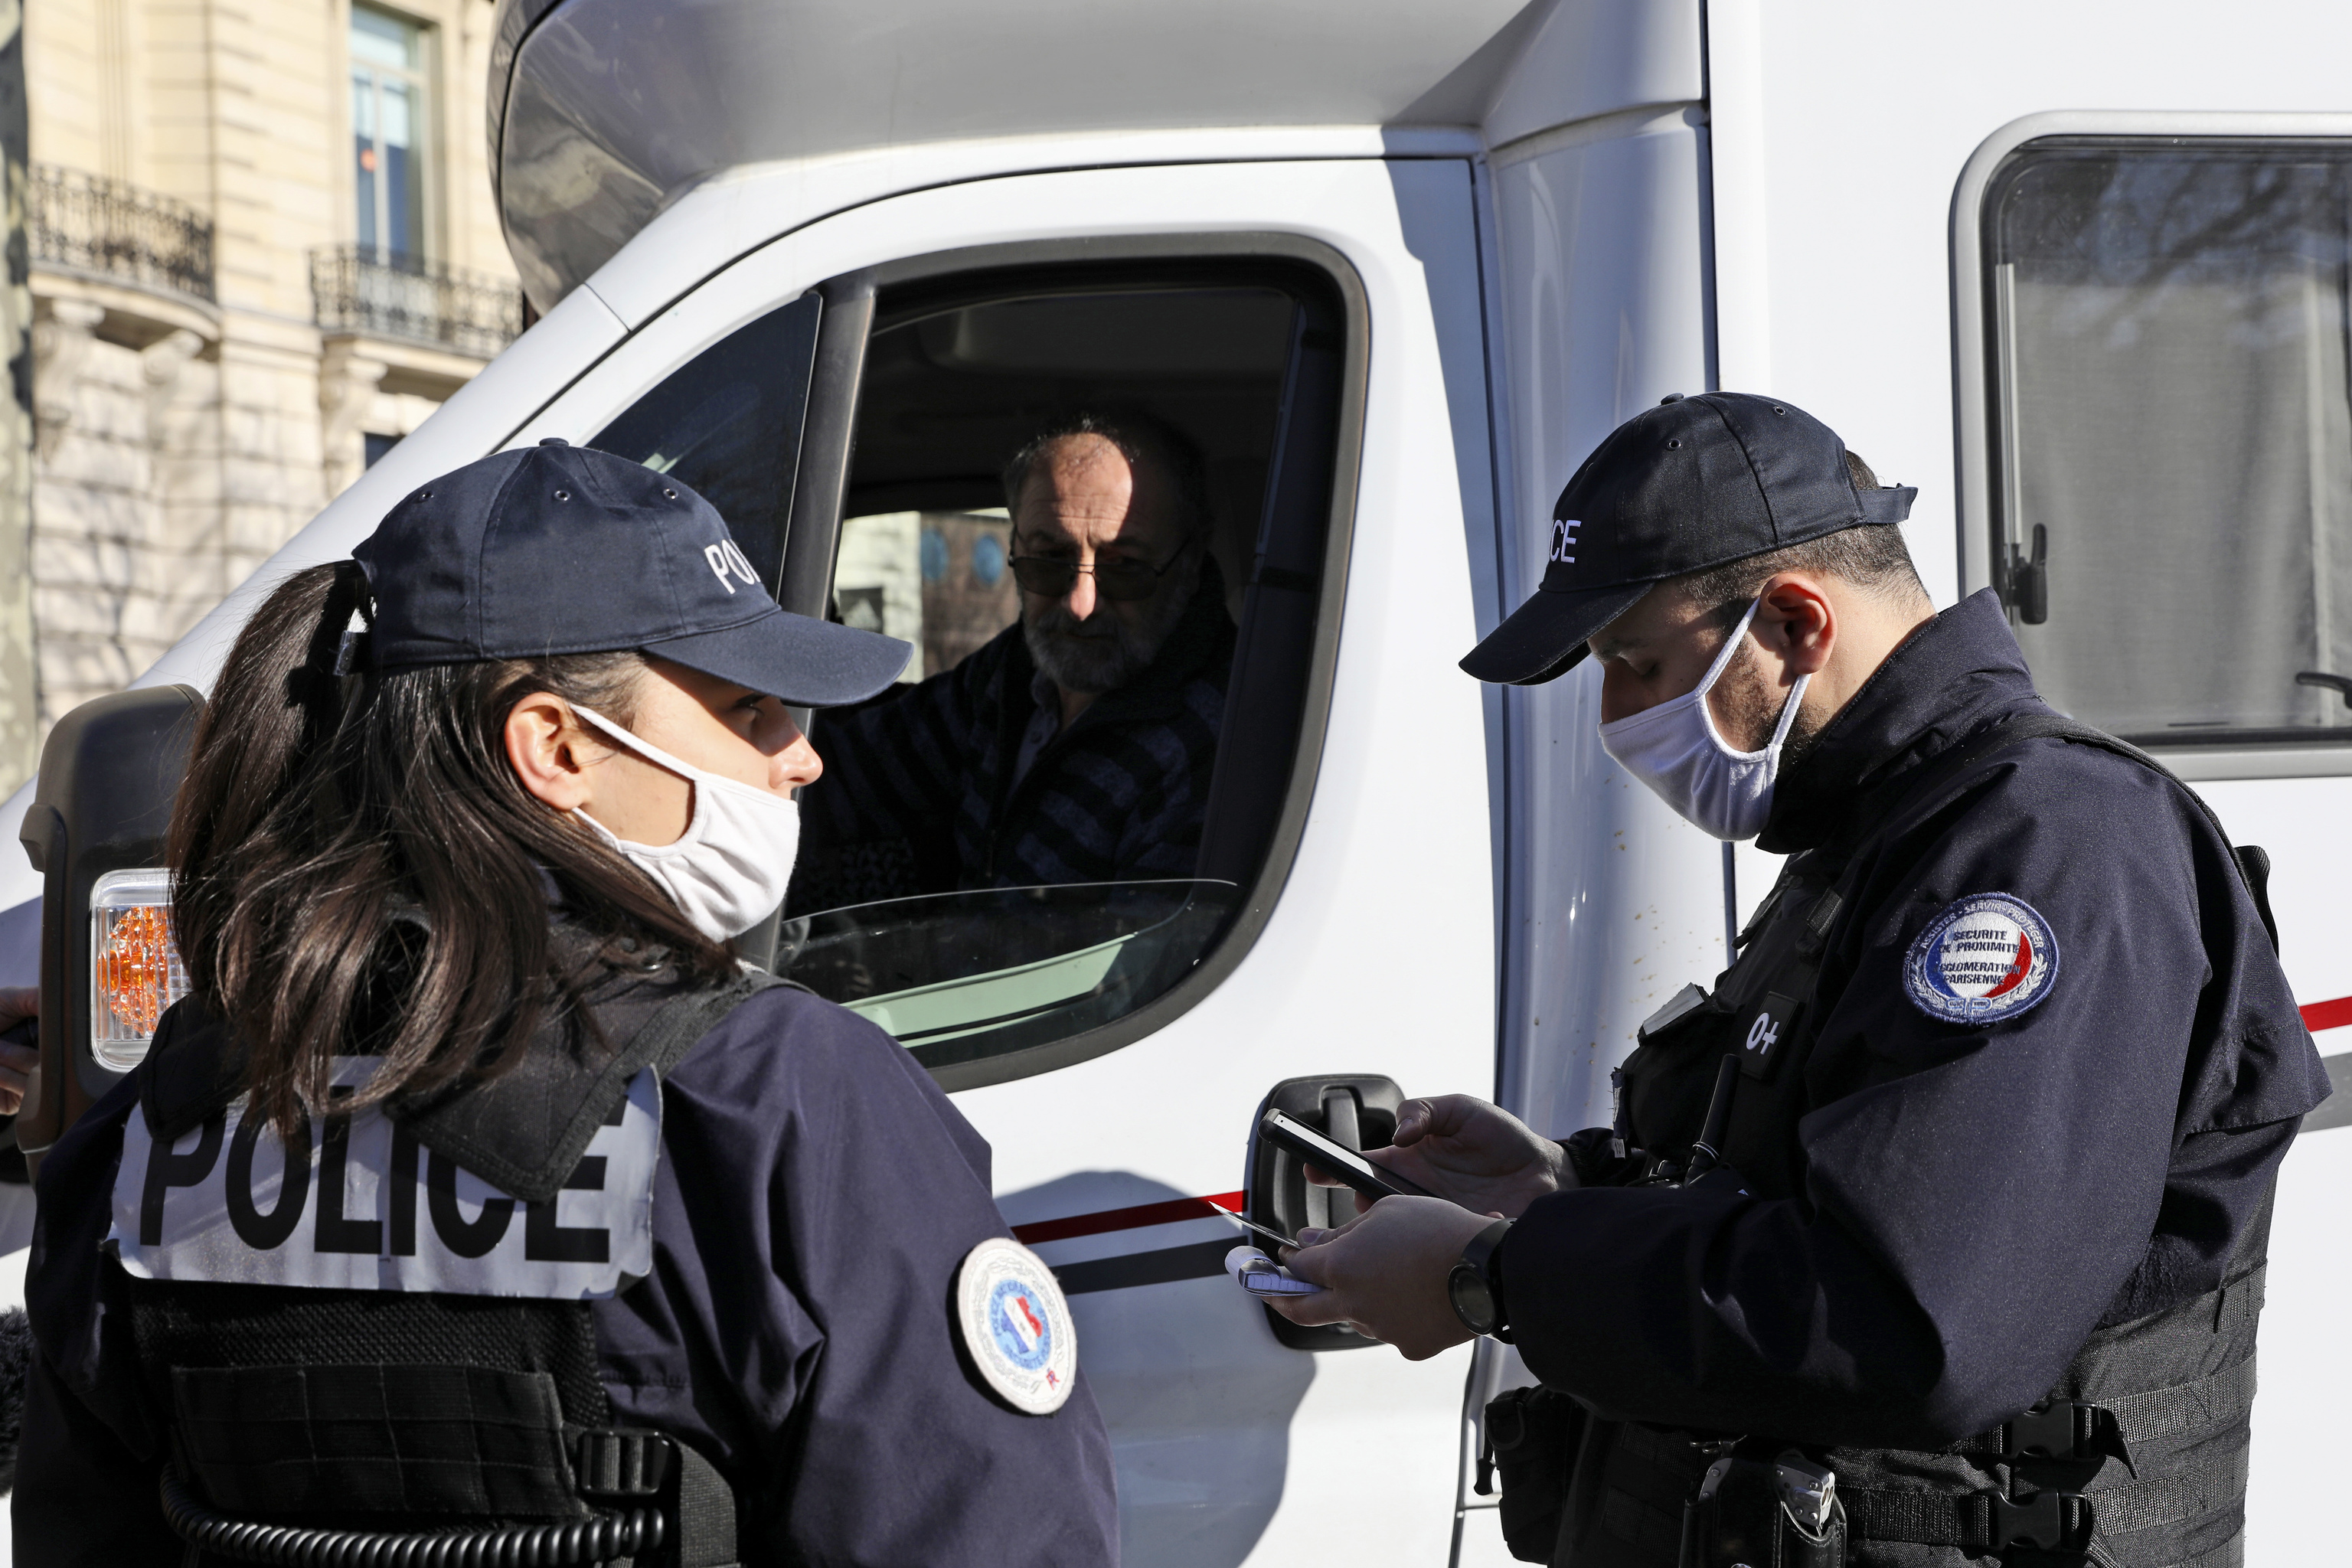 La policía pide identificación a un conductor en París.